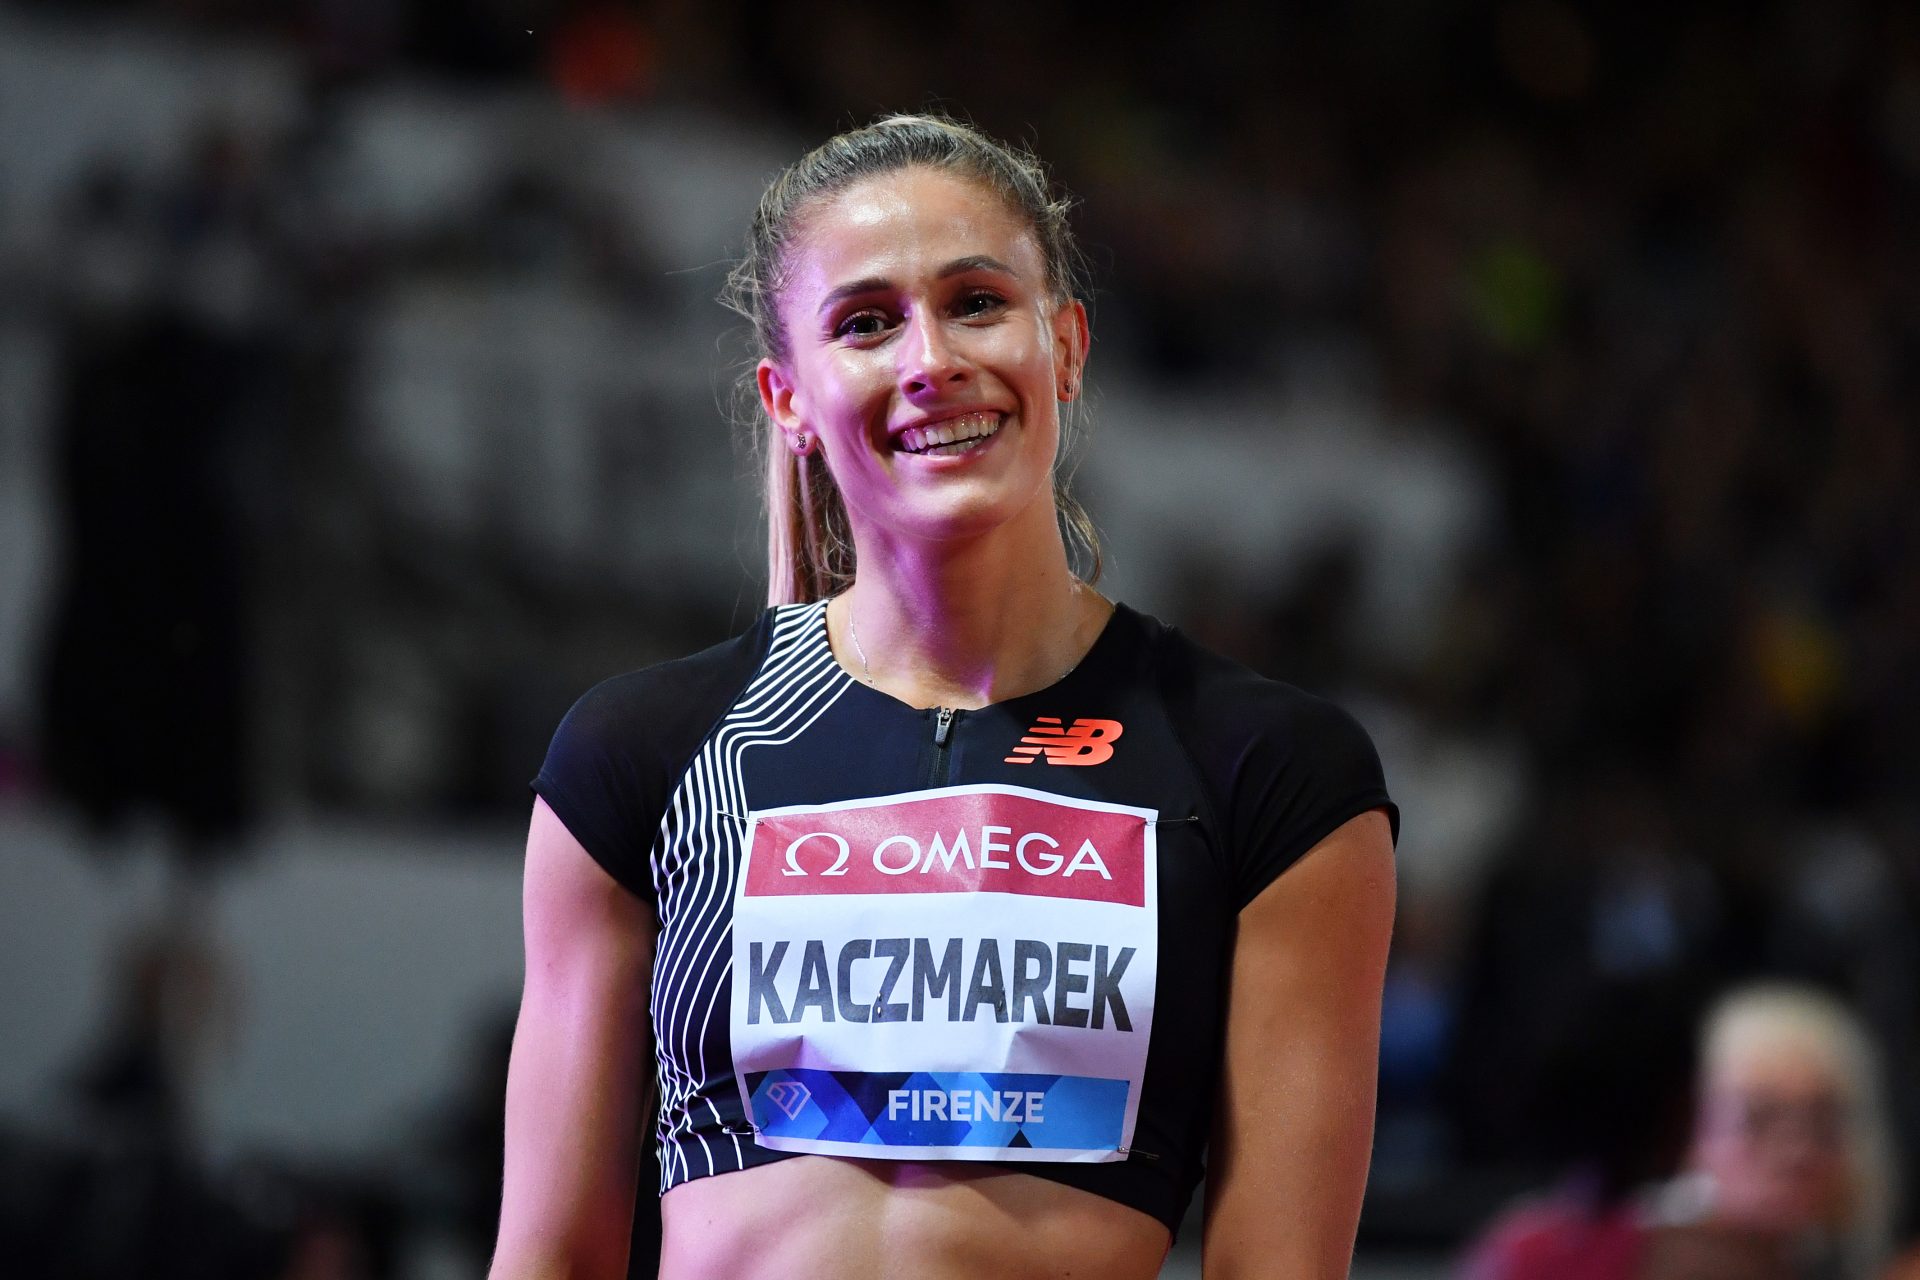 Todo el mundo quiere a Natalia Kaczmarek